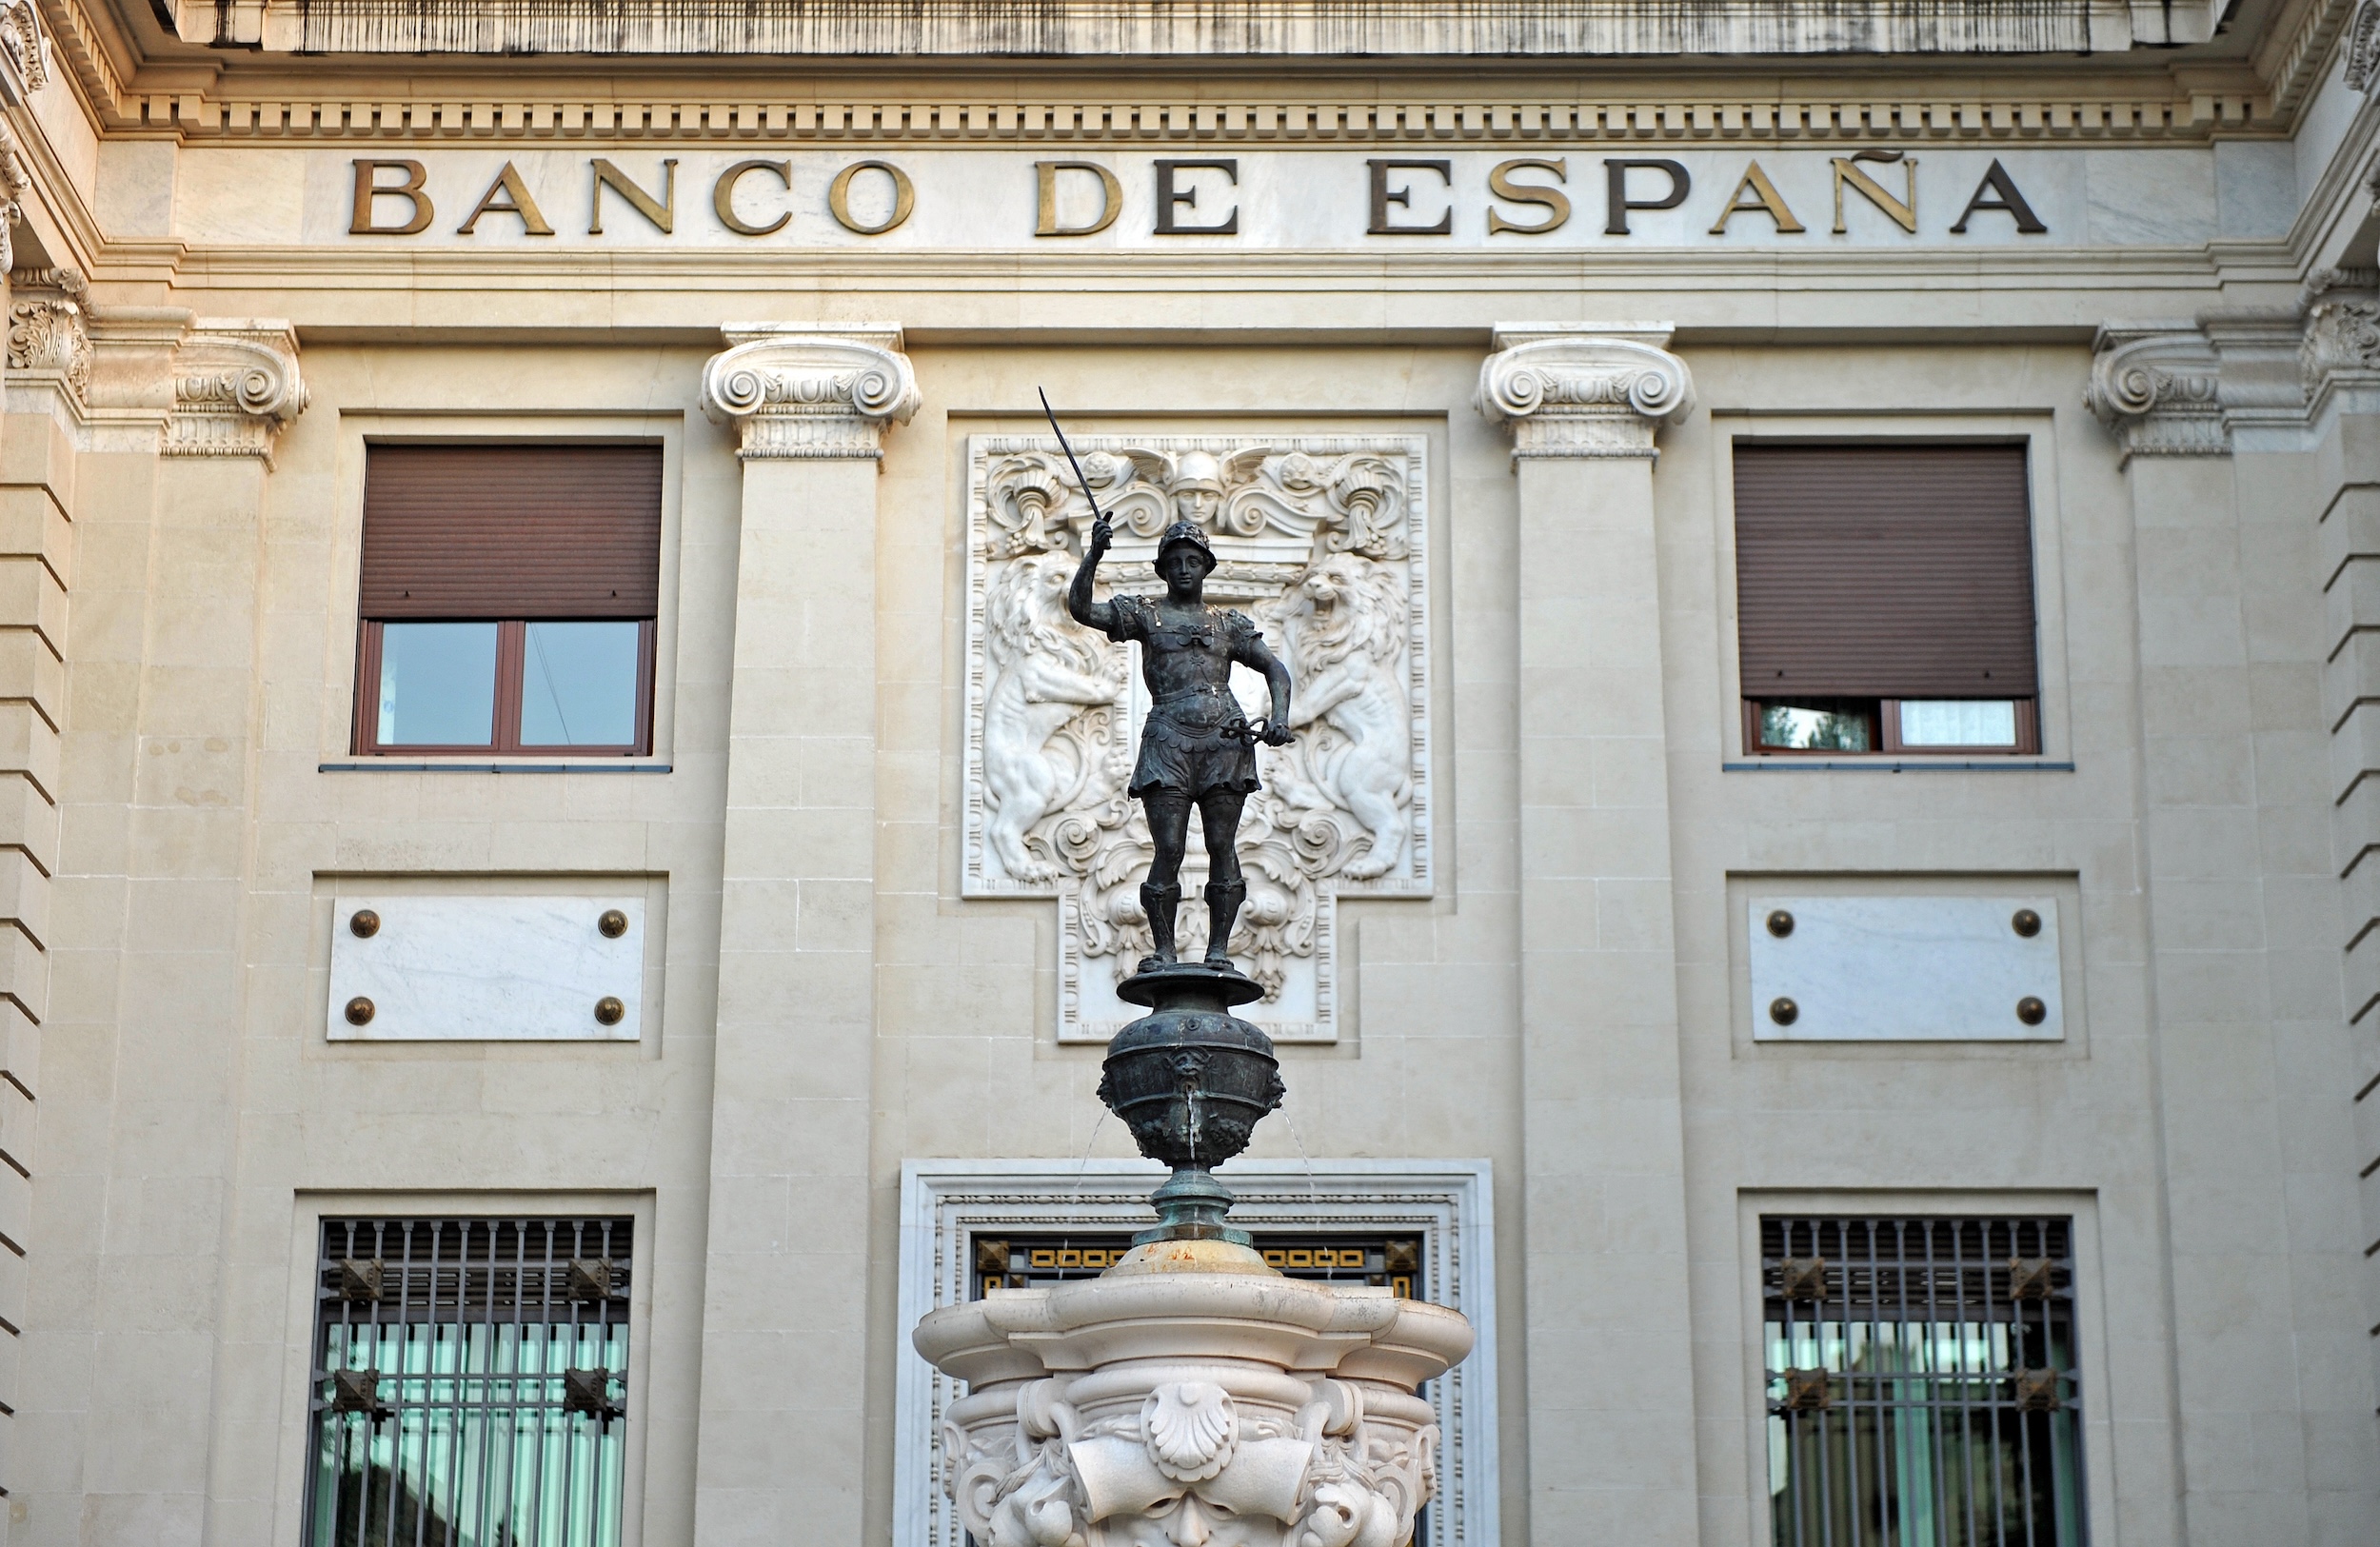 Banco De España Fines Pecunpay For Regulatory Non-compliance